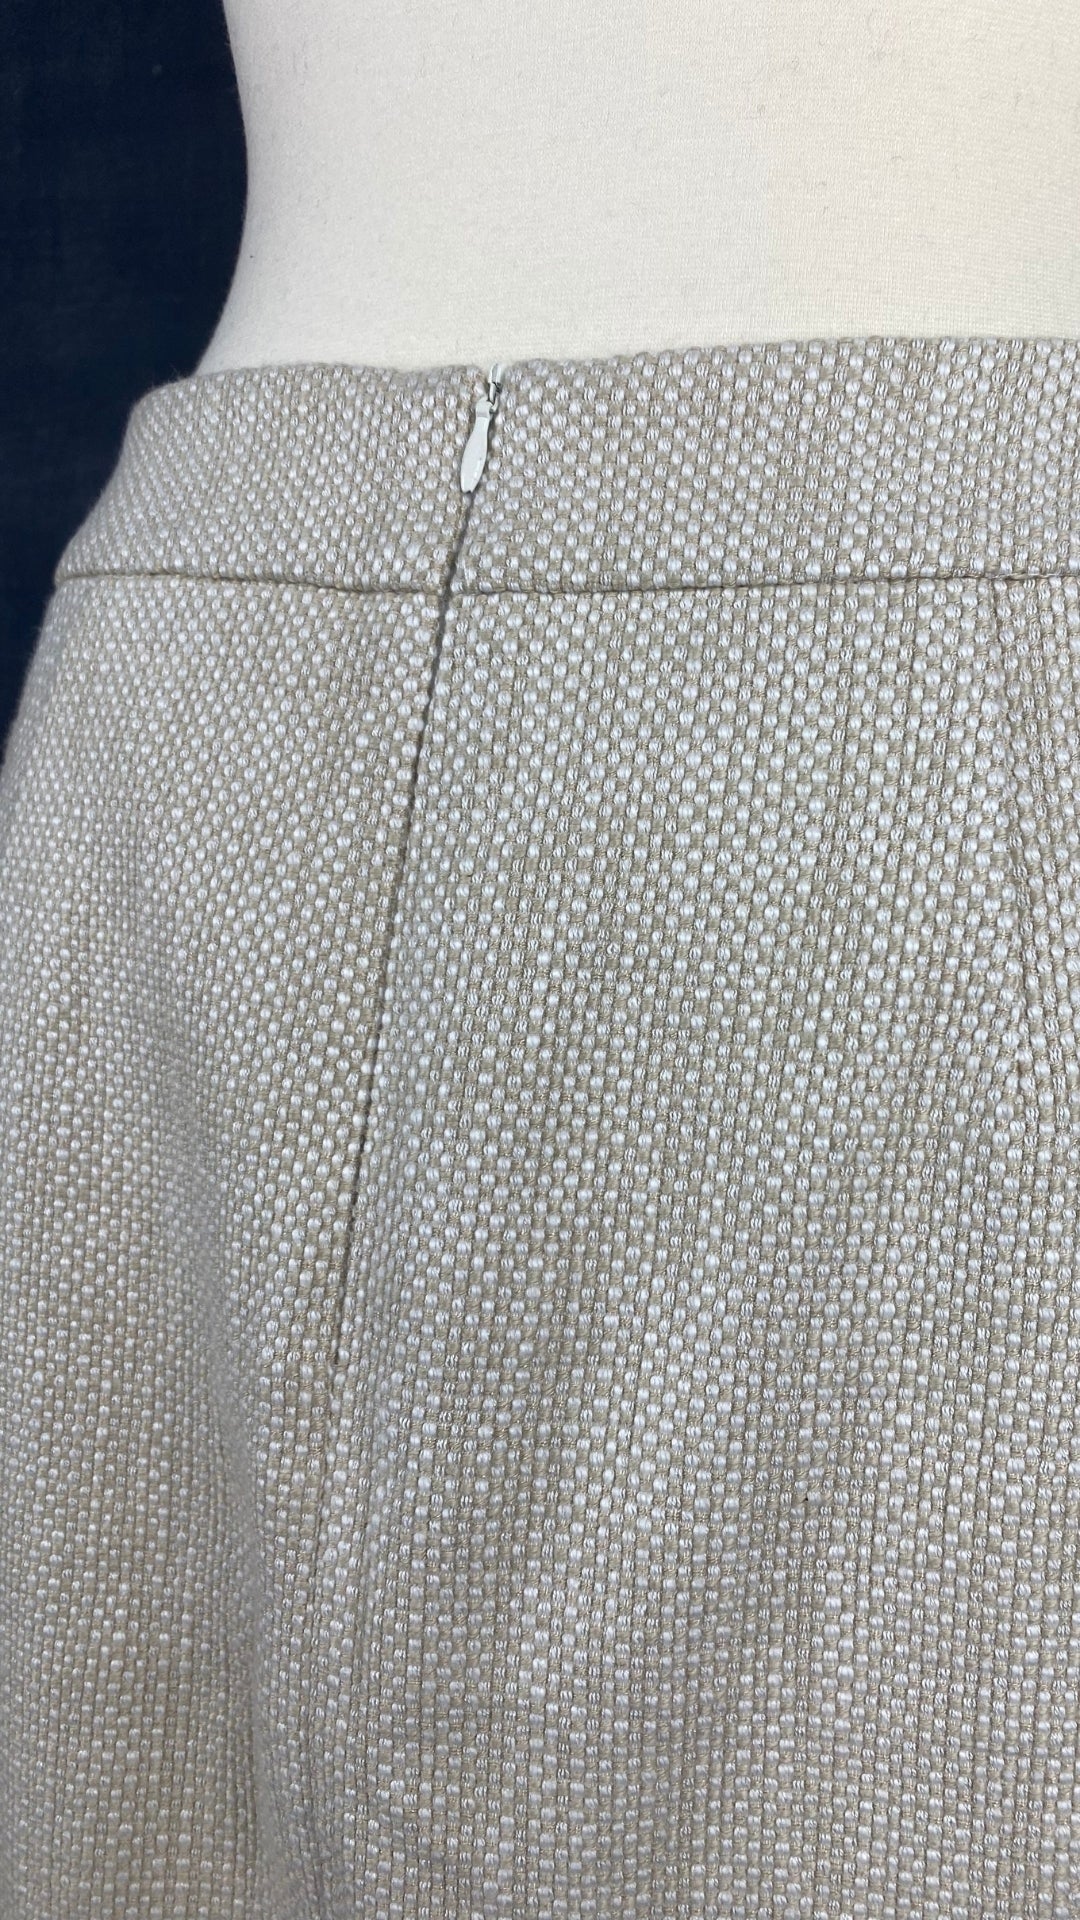 Jupe crème et sable en tweed Tristan, taille 8. Vue de près de la fermeture éclair au dos.